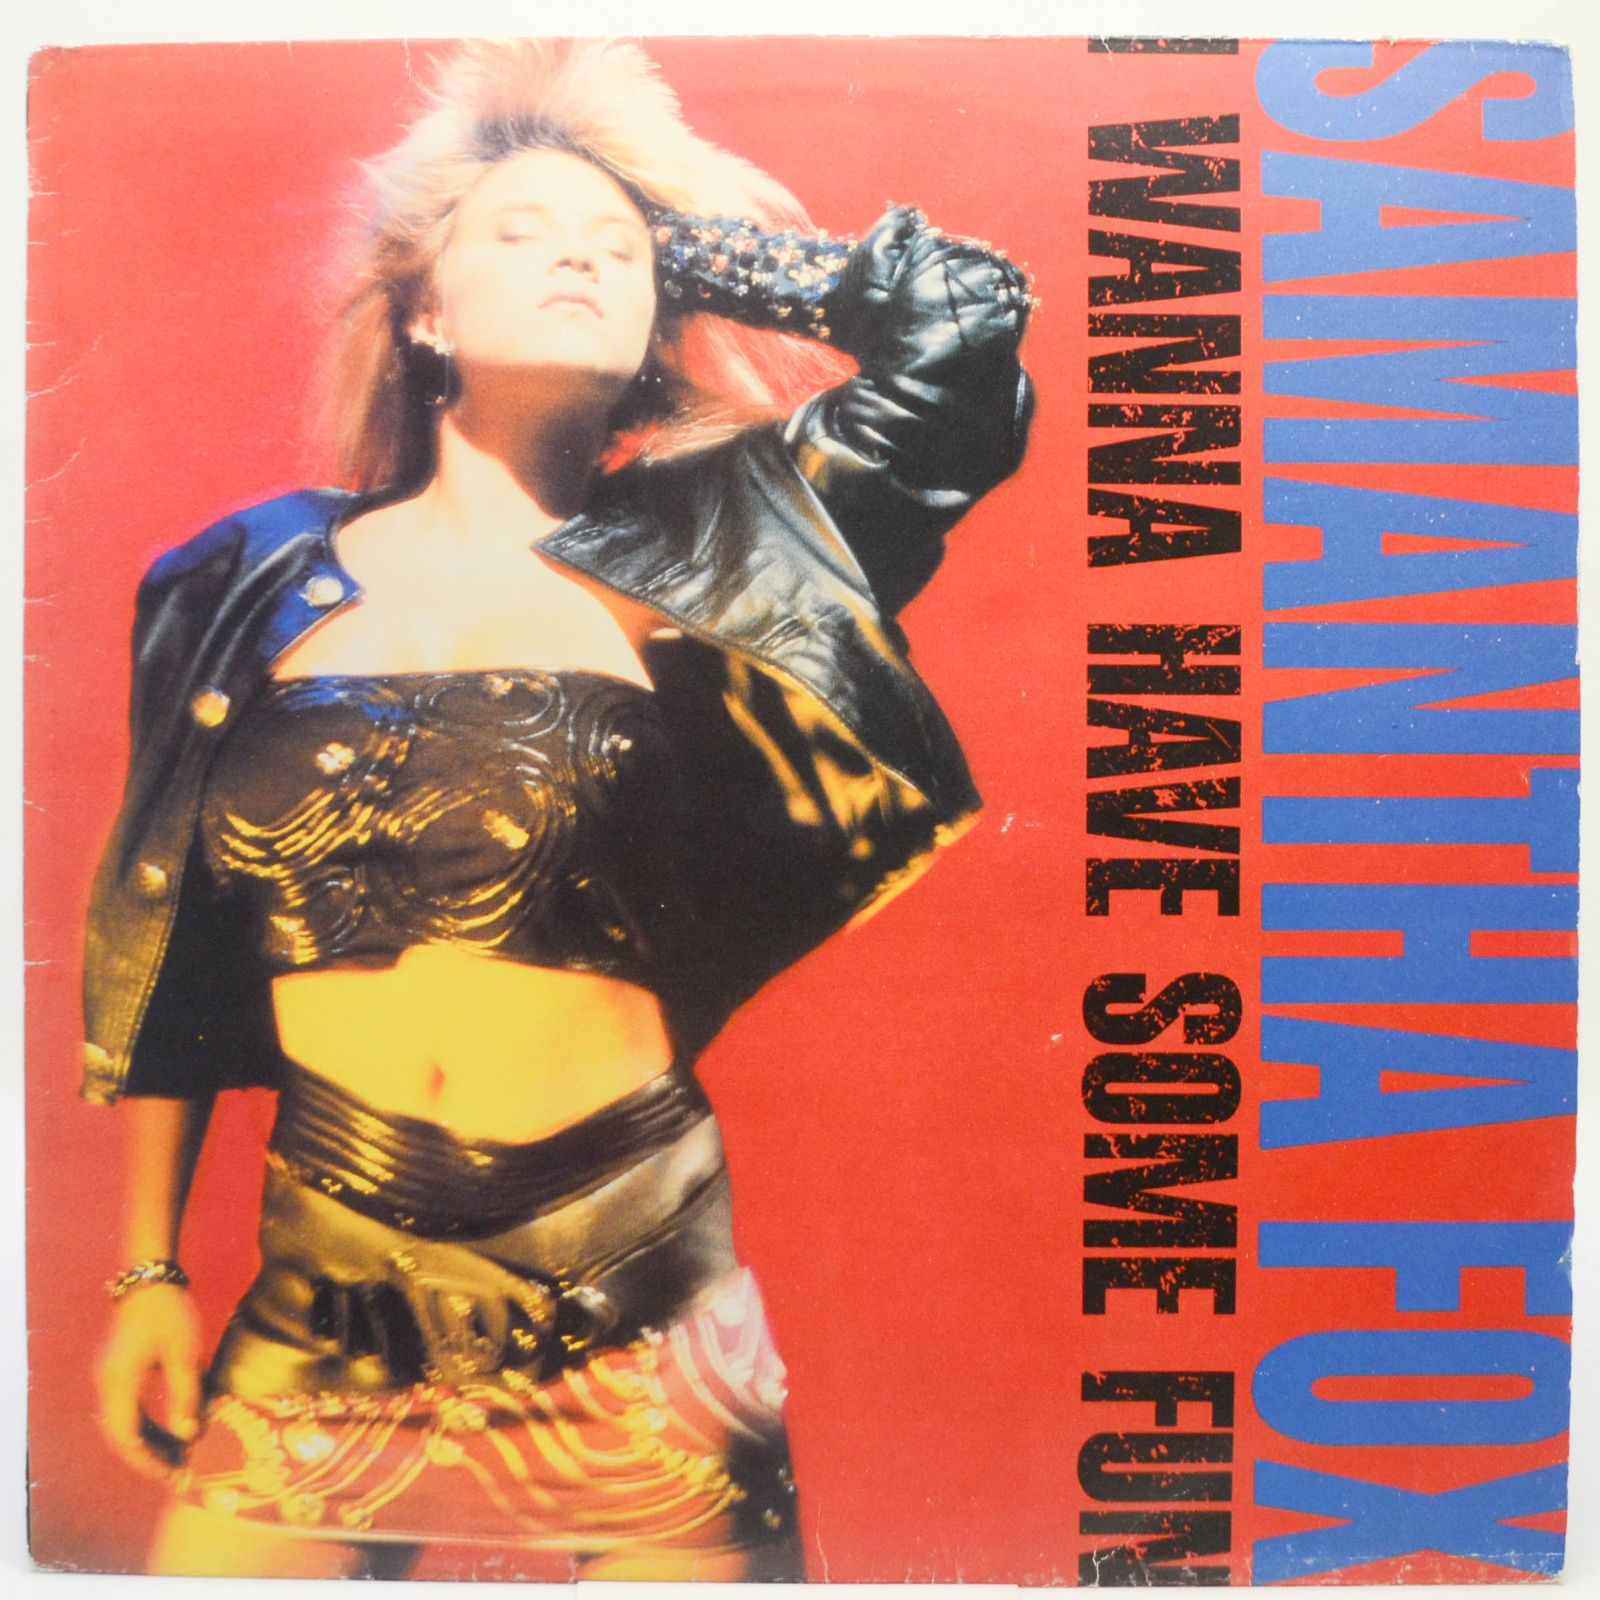 Samantha Fox — I Wanna Have Some Fun, 1989